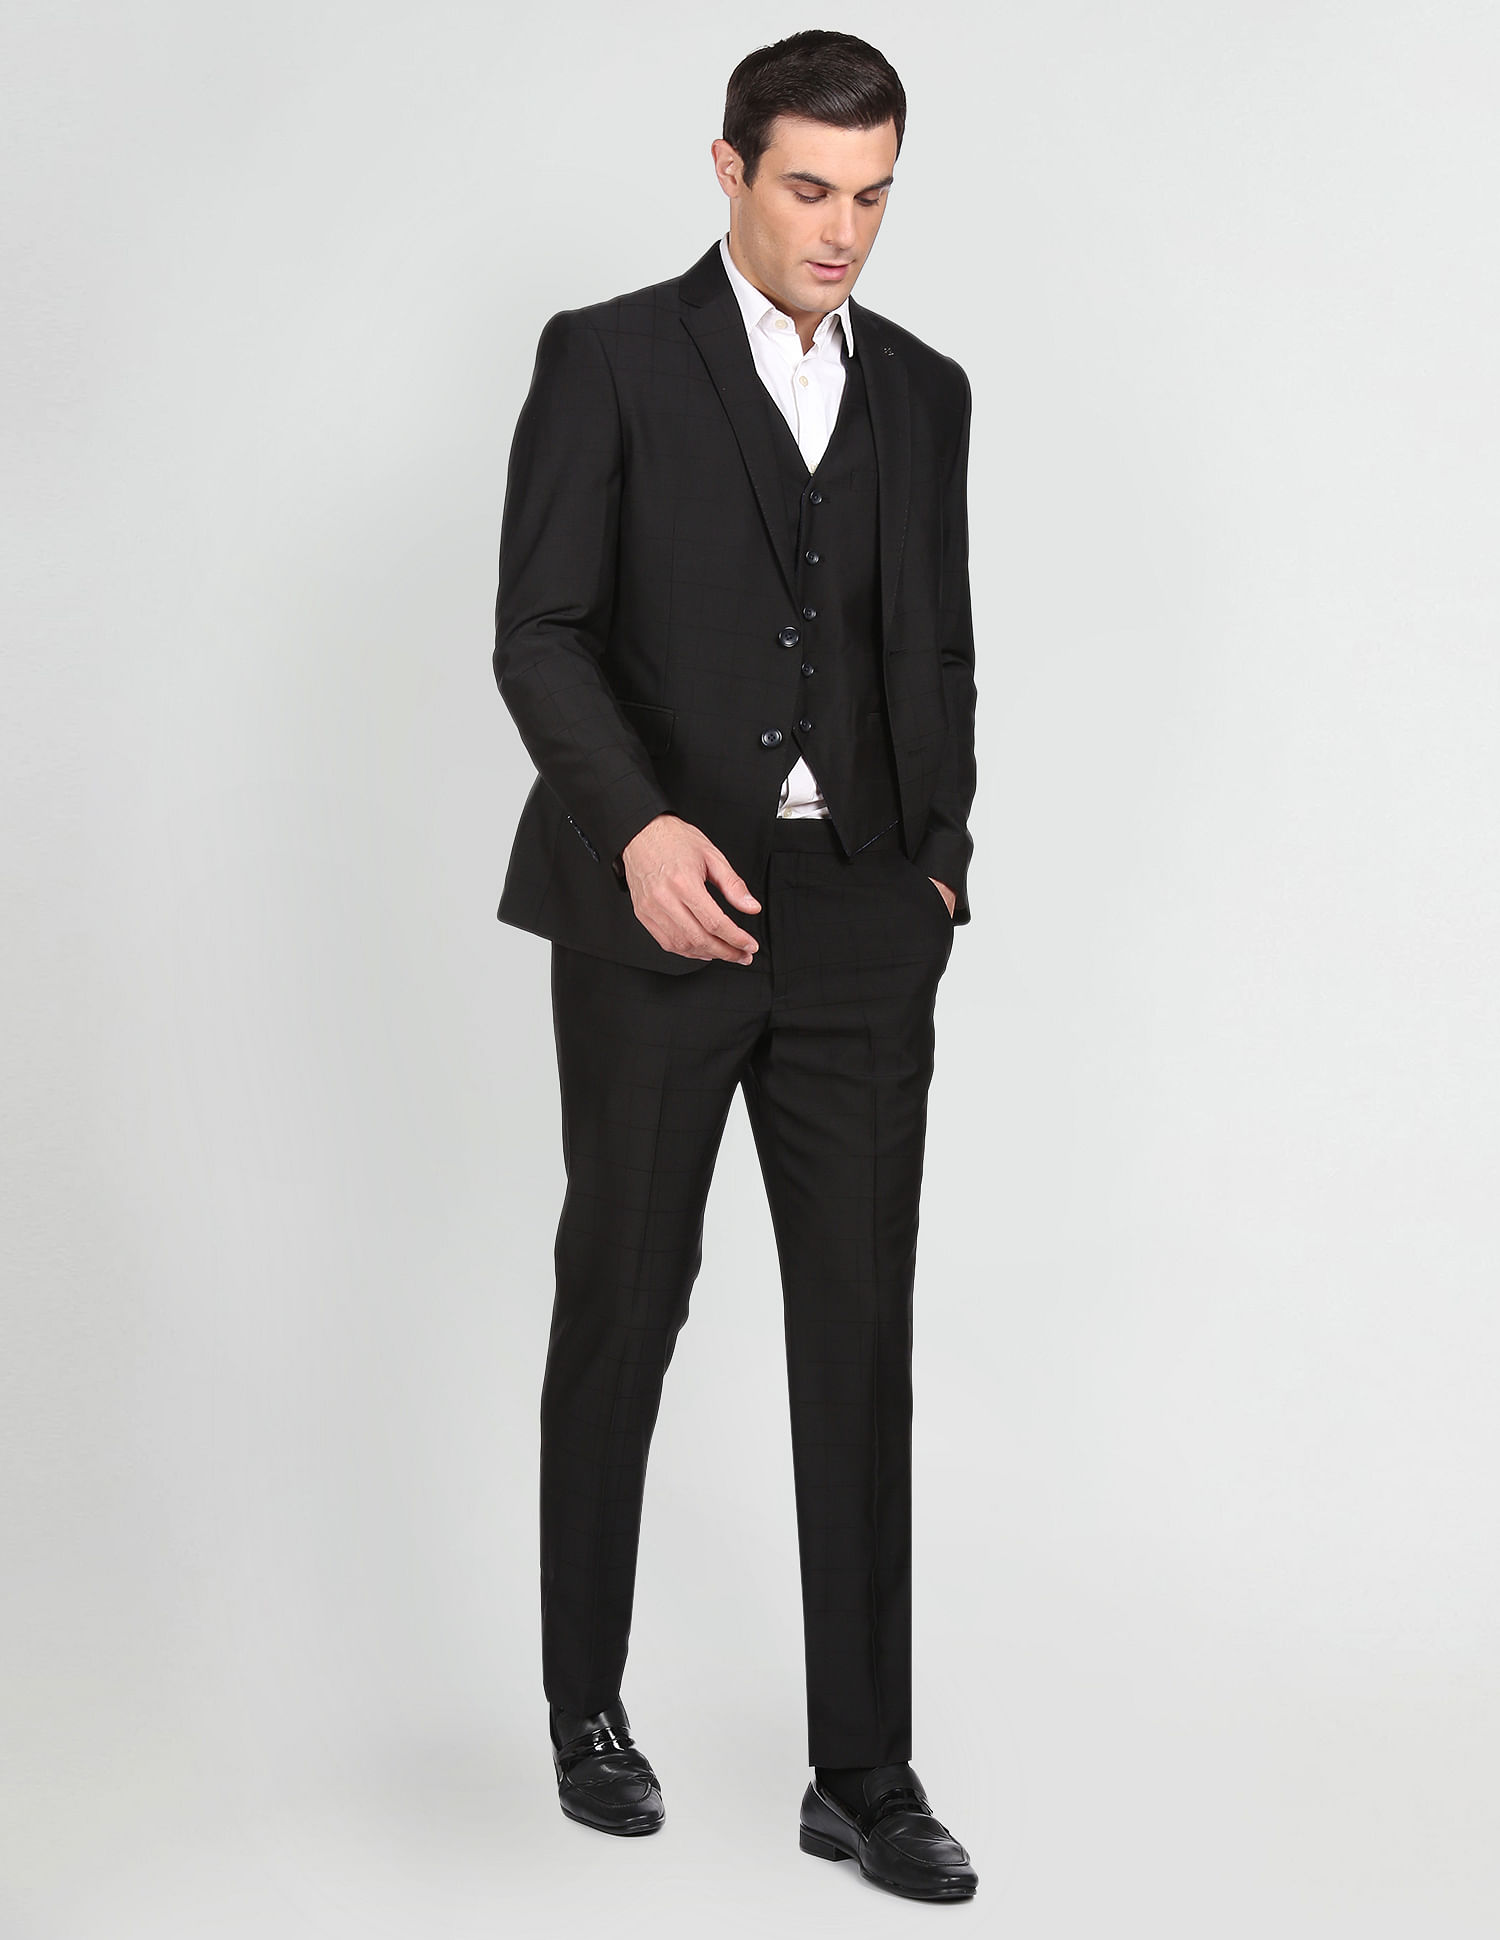 MEN GREY SUIT Three Piece Suit Wedding Wear Gift Men Party Suit Suit for  Men Slim Fit Suit Men Stylish Suit Men Wedding Suit - Etsy | Grey suit men,  Wedding suits